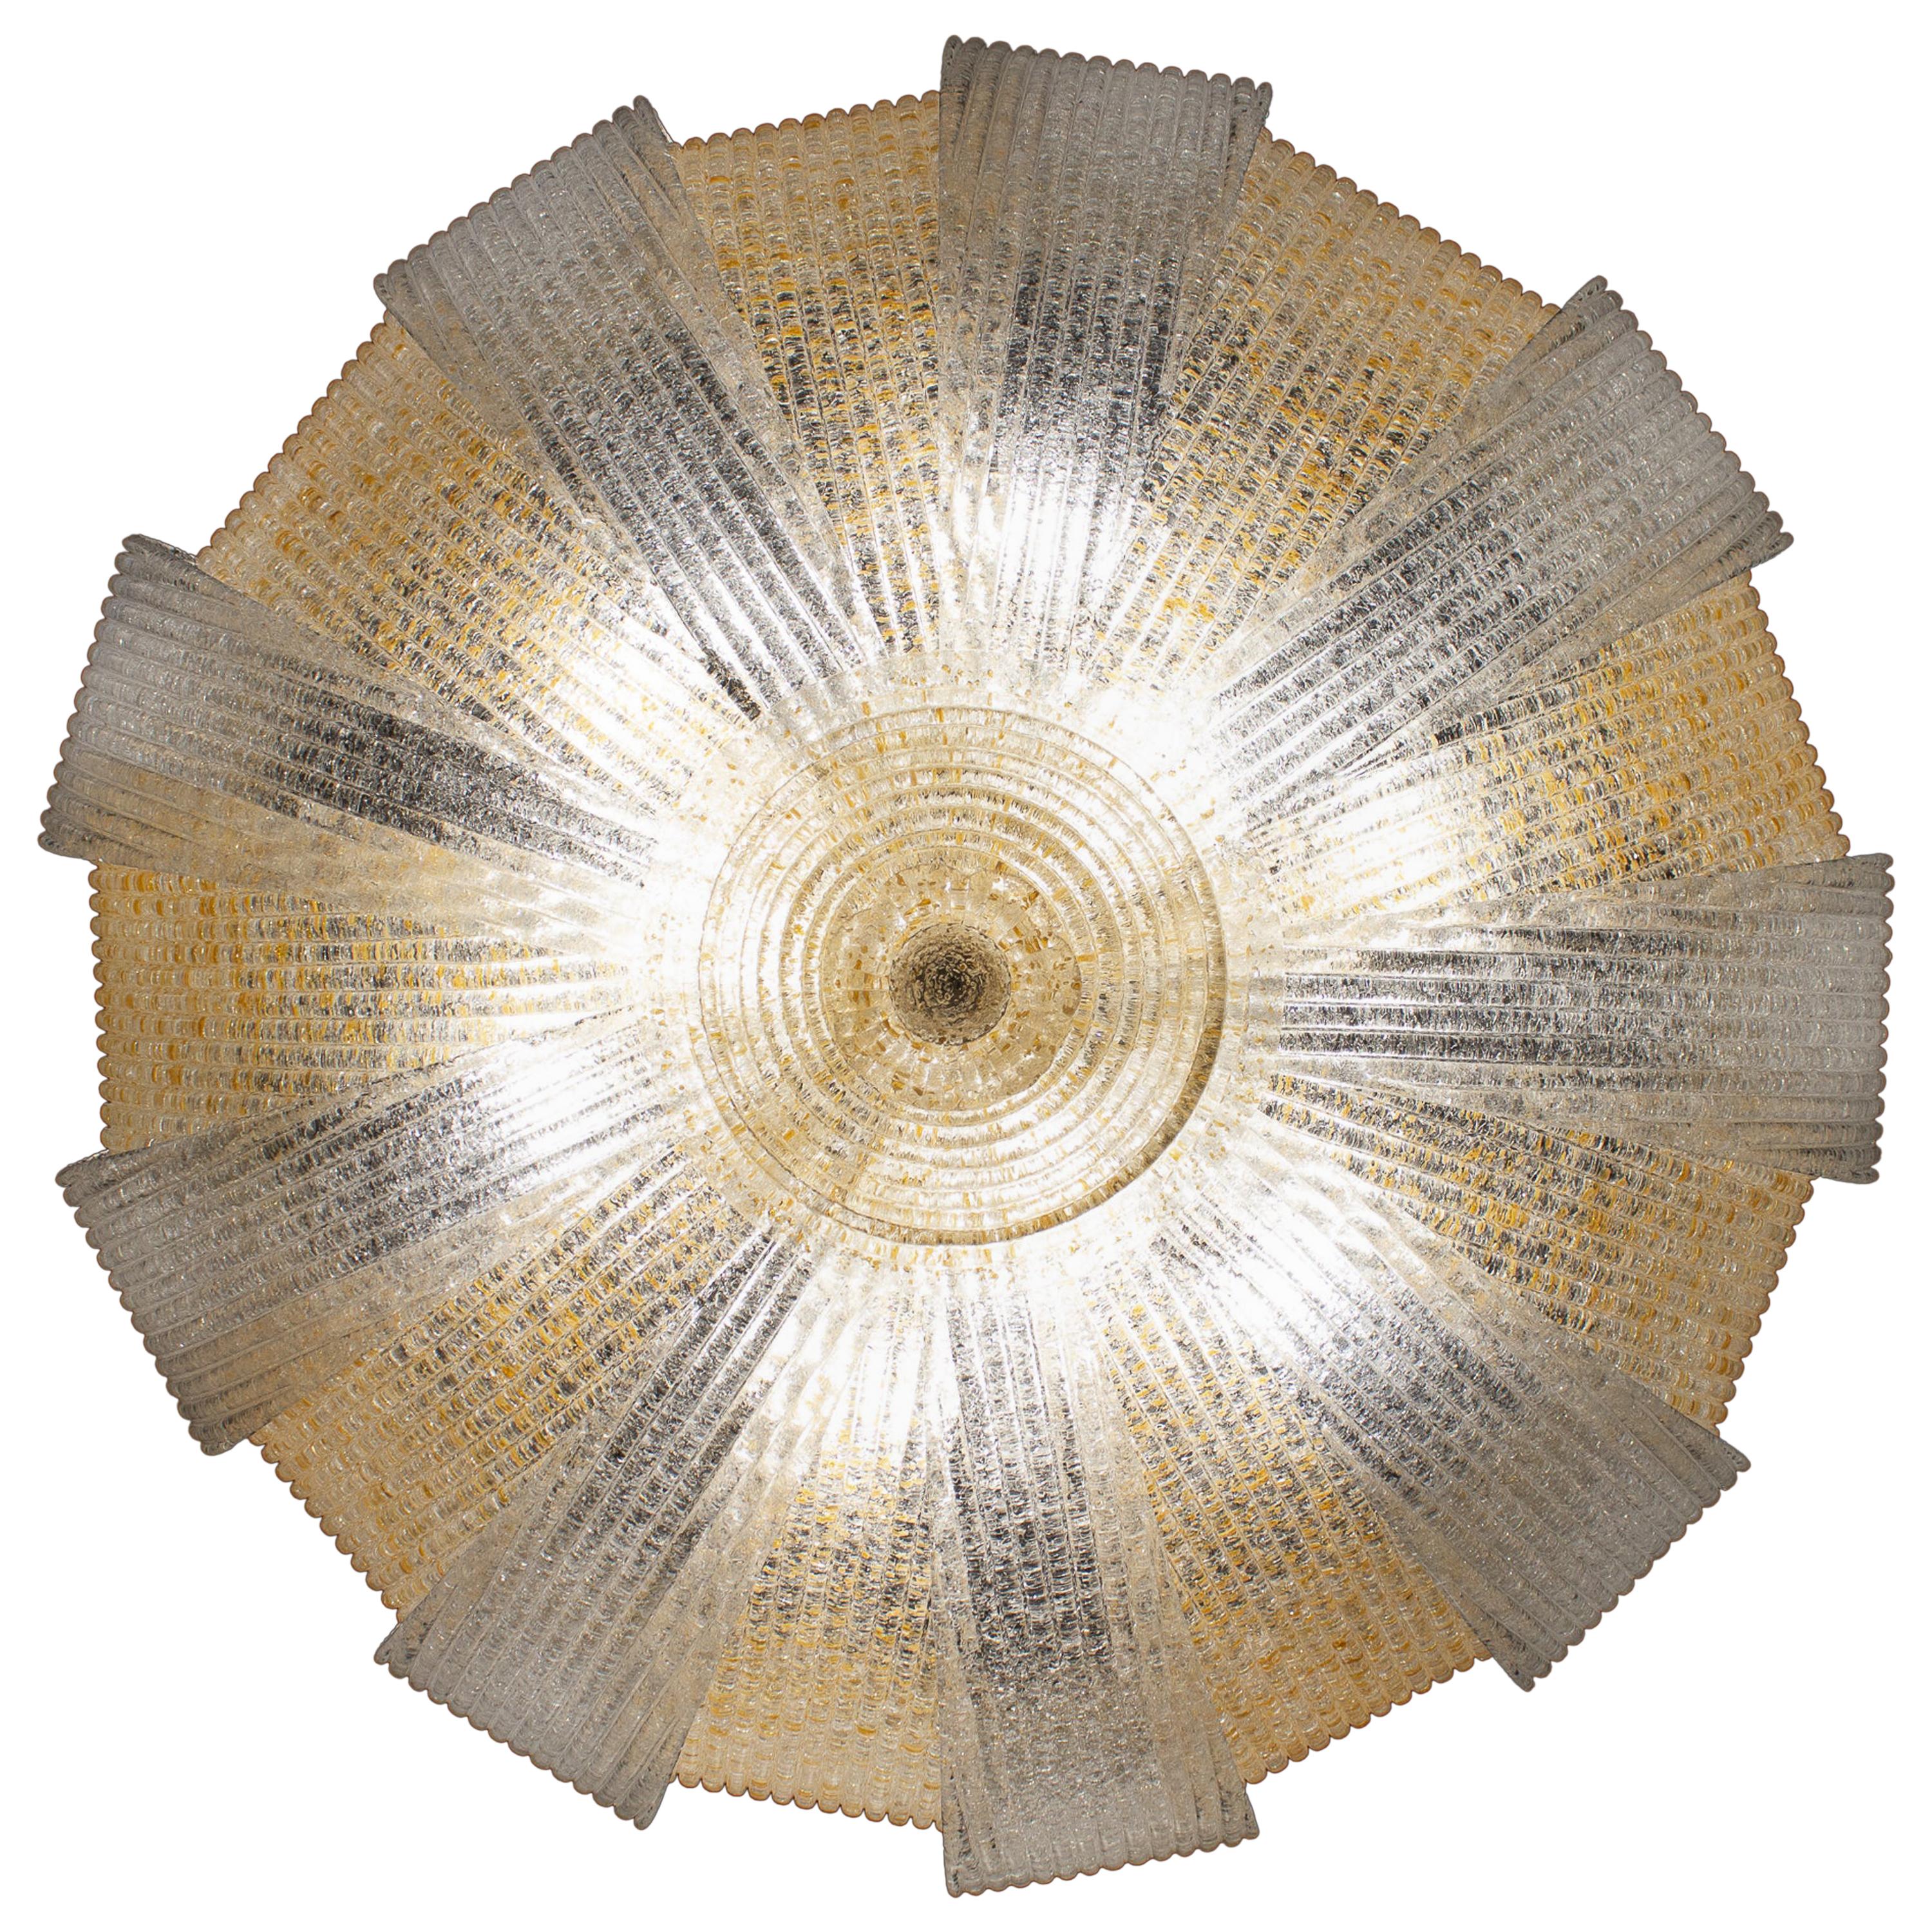 Exklusive Produktion mit kostbaren Murano-Glasblättern mit Goldeinlage, die einen fabelhaften Lichteffekt erzeugen.
Auch mit eisfarbenen Gläsern erhältlich.
Rahmen; vergoldet oder vernickelt.
Sechs Glühbirnen E 27. Wir können für Ihr Land